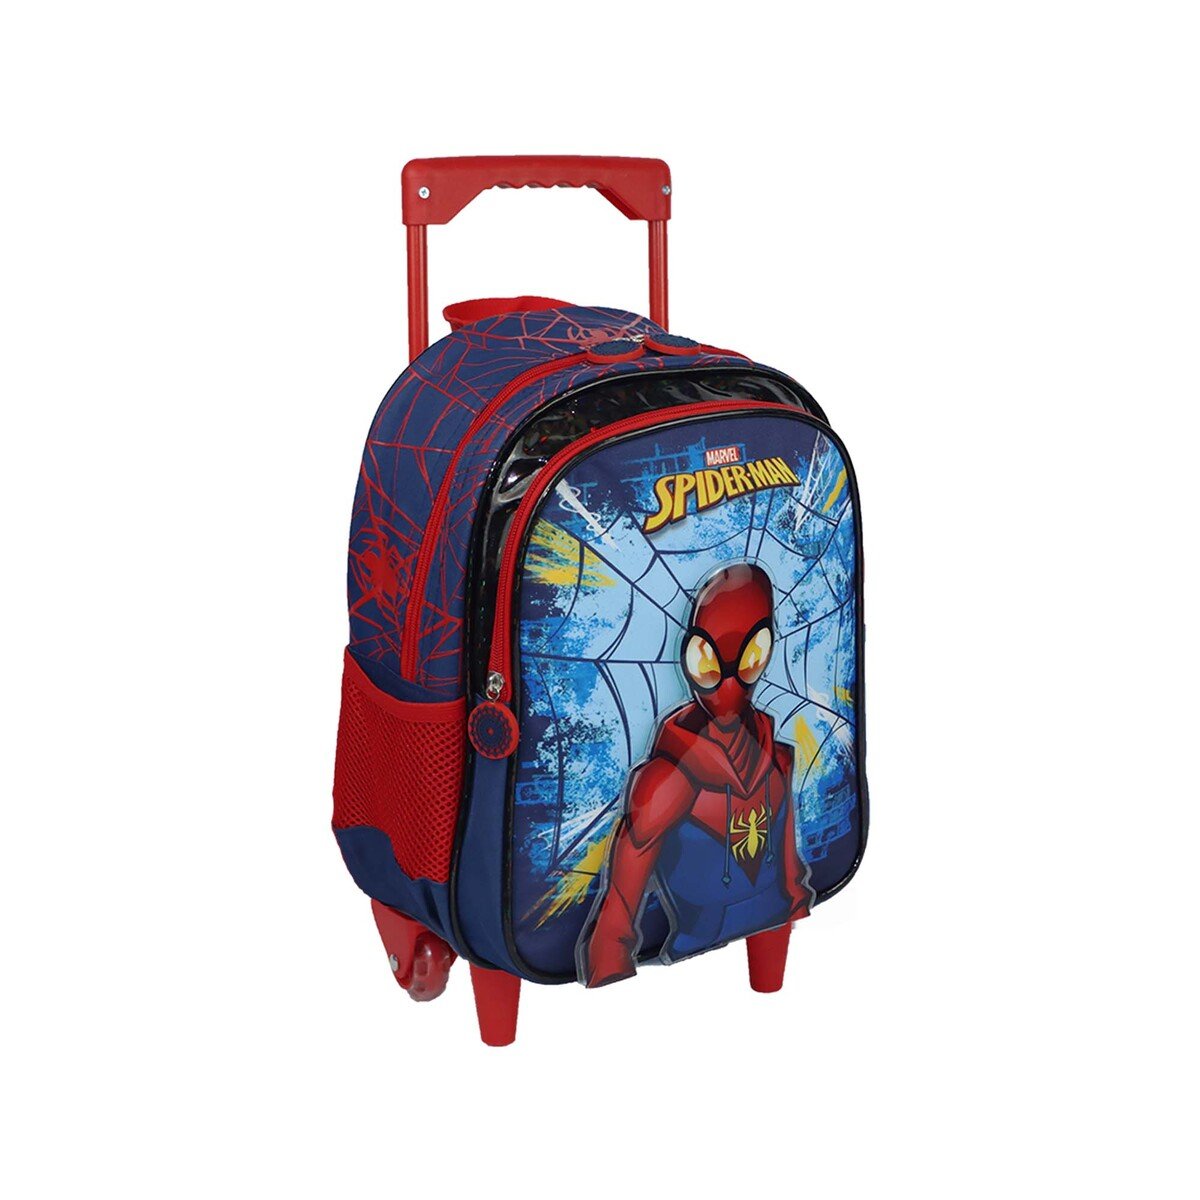 Spiderman School Trolley Bag 6898200039 13inch